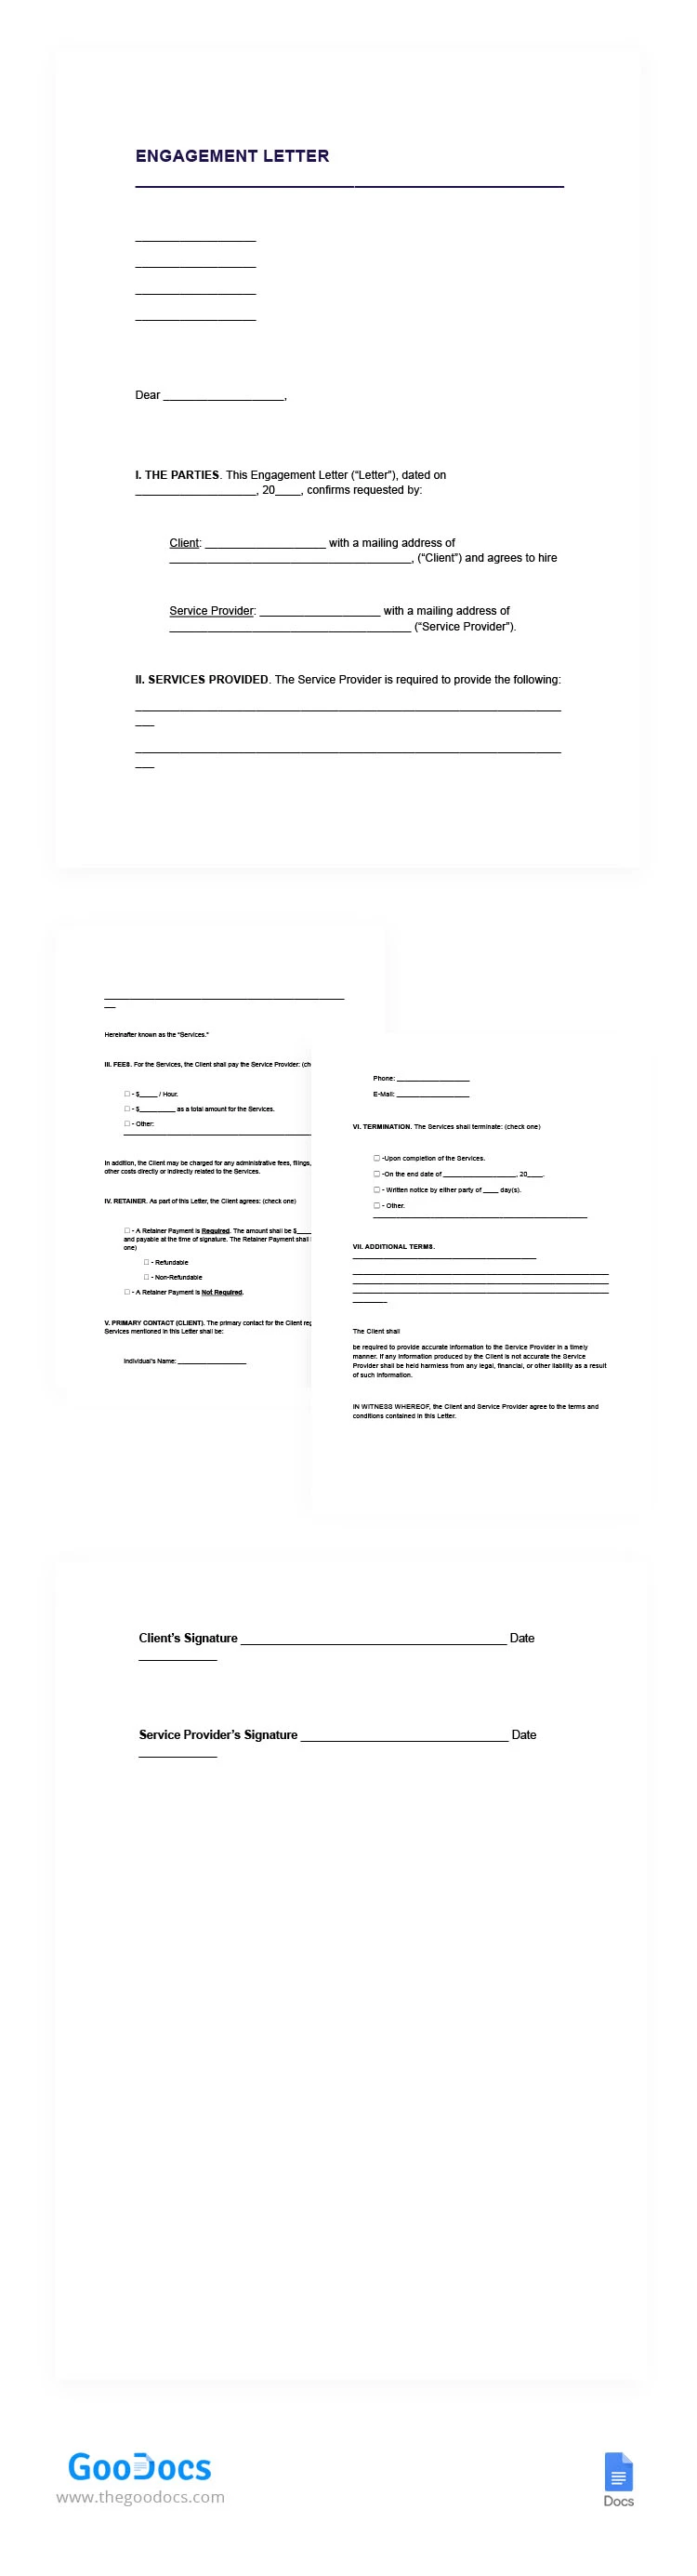 Engagementsschreiben - free Google Docs Template - 10067112